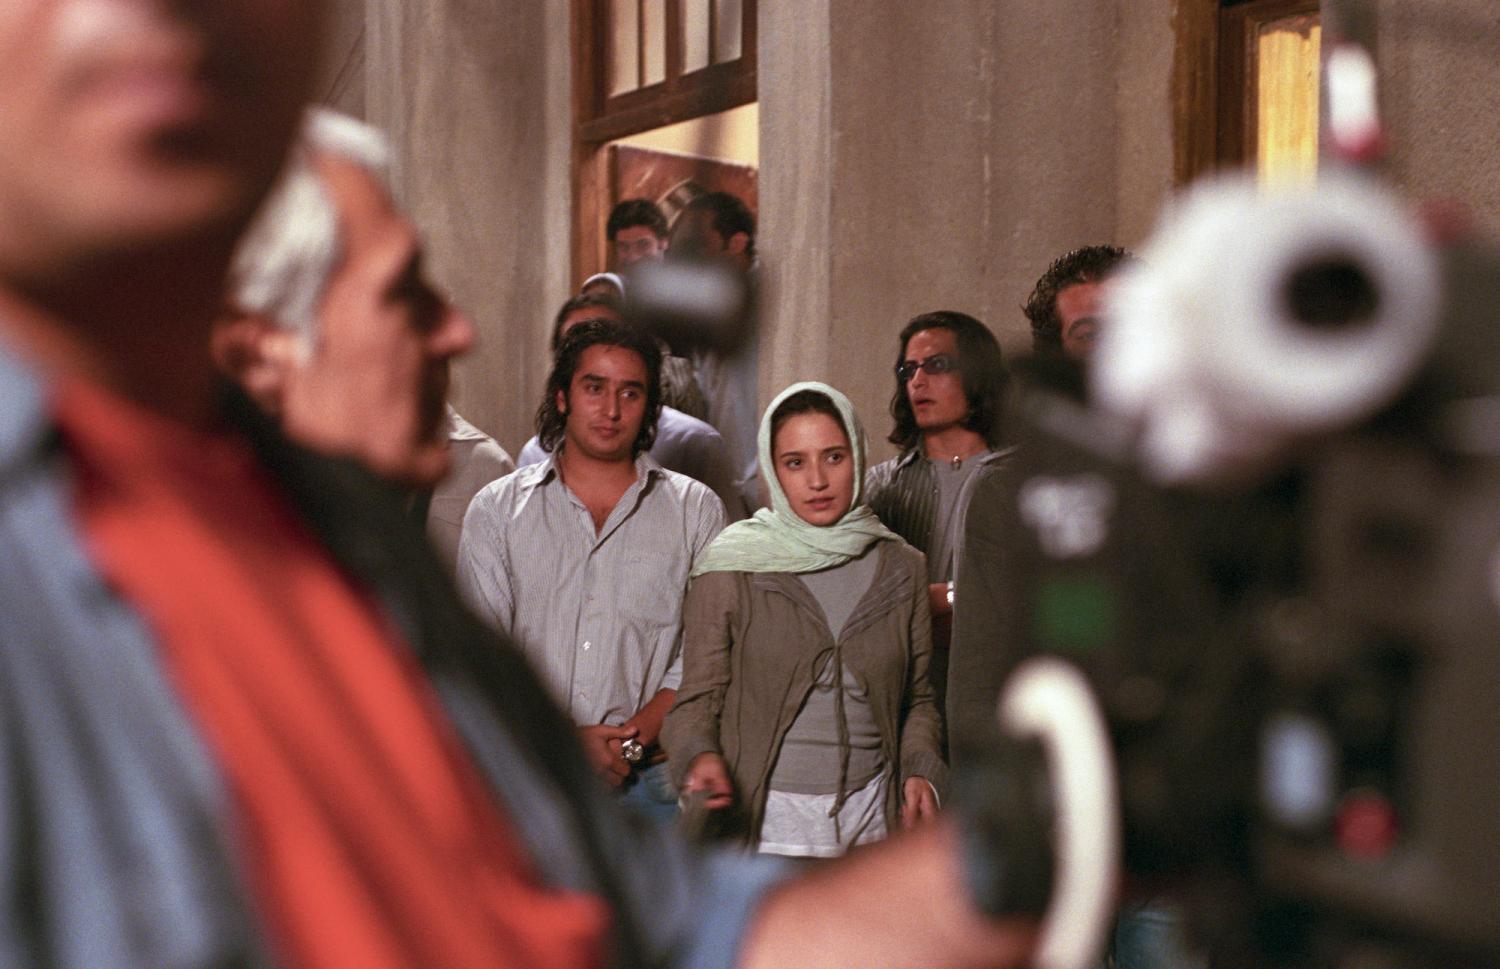 Devant la caméra et ses opérateurs, Negar Javaherian au milieu d'un groupe d'acteurs. Téhéran, Iran, septembre 2006.